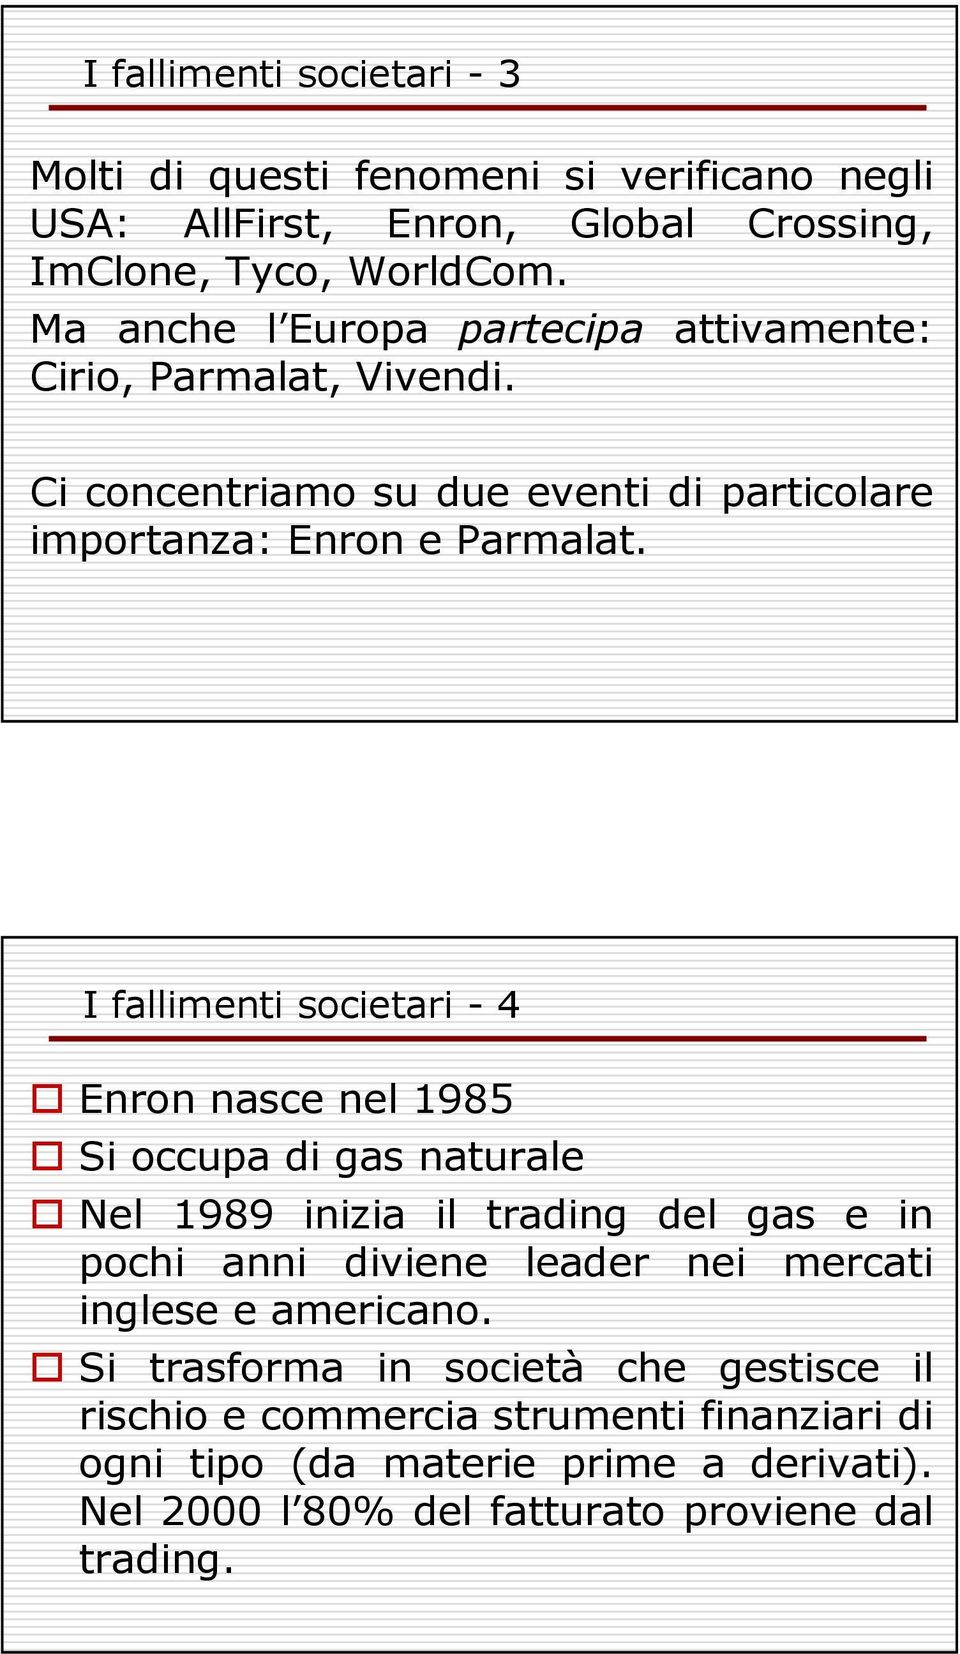 I fallimenti societari - 4 Enron nasce nel 1985 Si occupa di gas naturale Nel 1989 inizia il trading del gas e in pochi anni diviene leader nei mercati